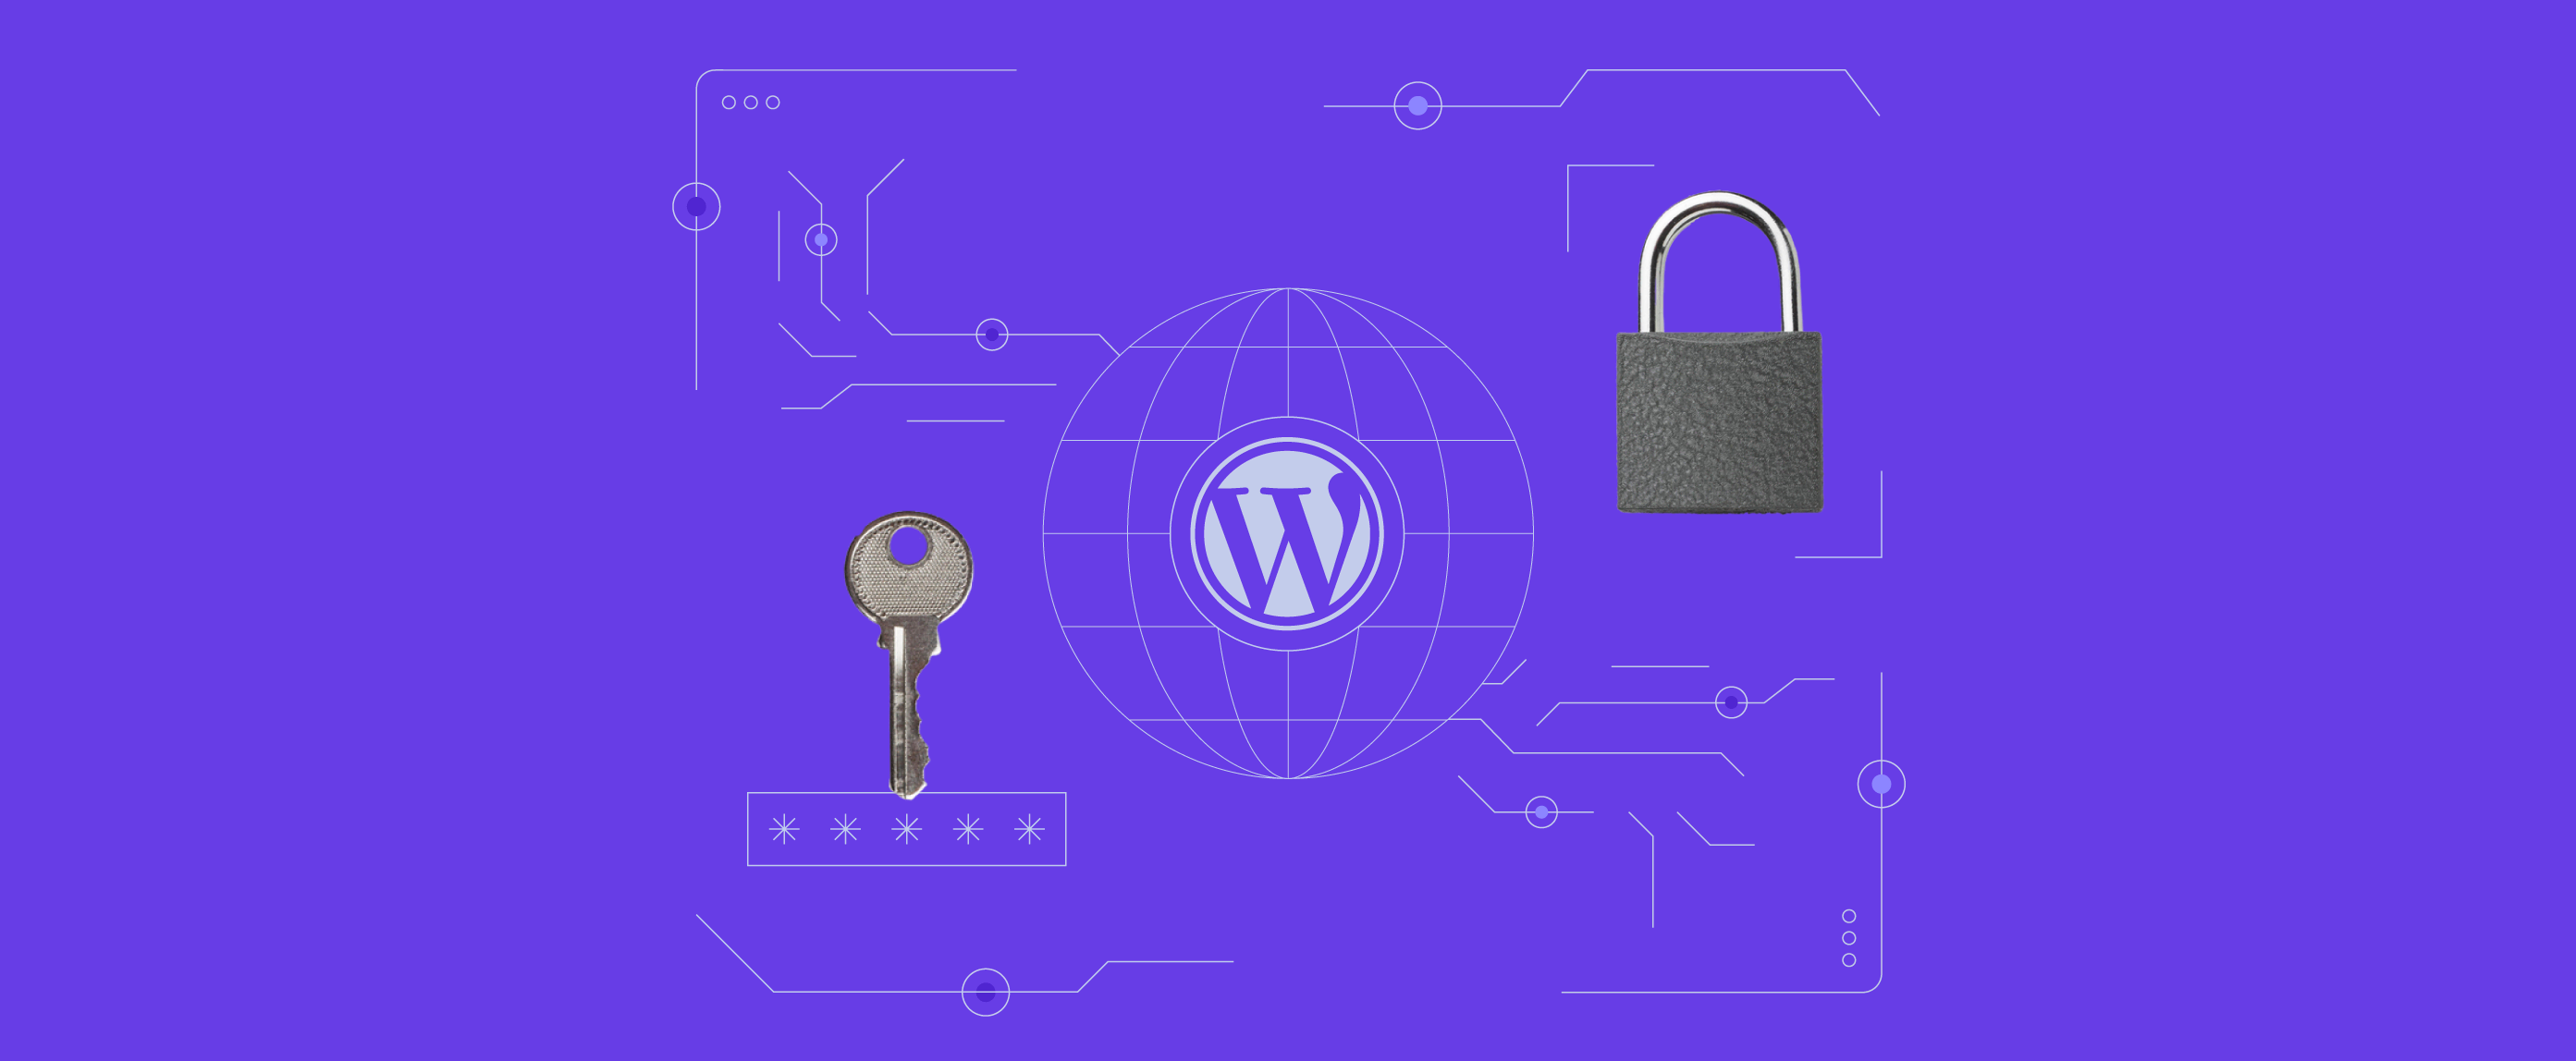 Seguridad de WordPress en 2022: qué hacemos para proteger a nuestros usuarios